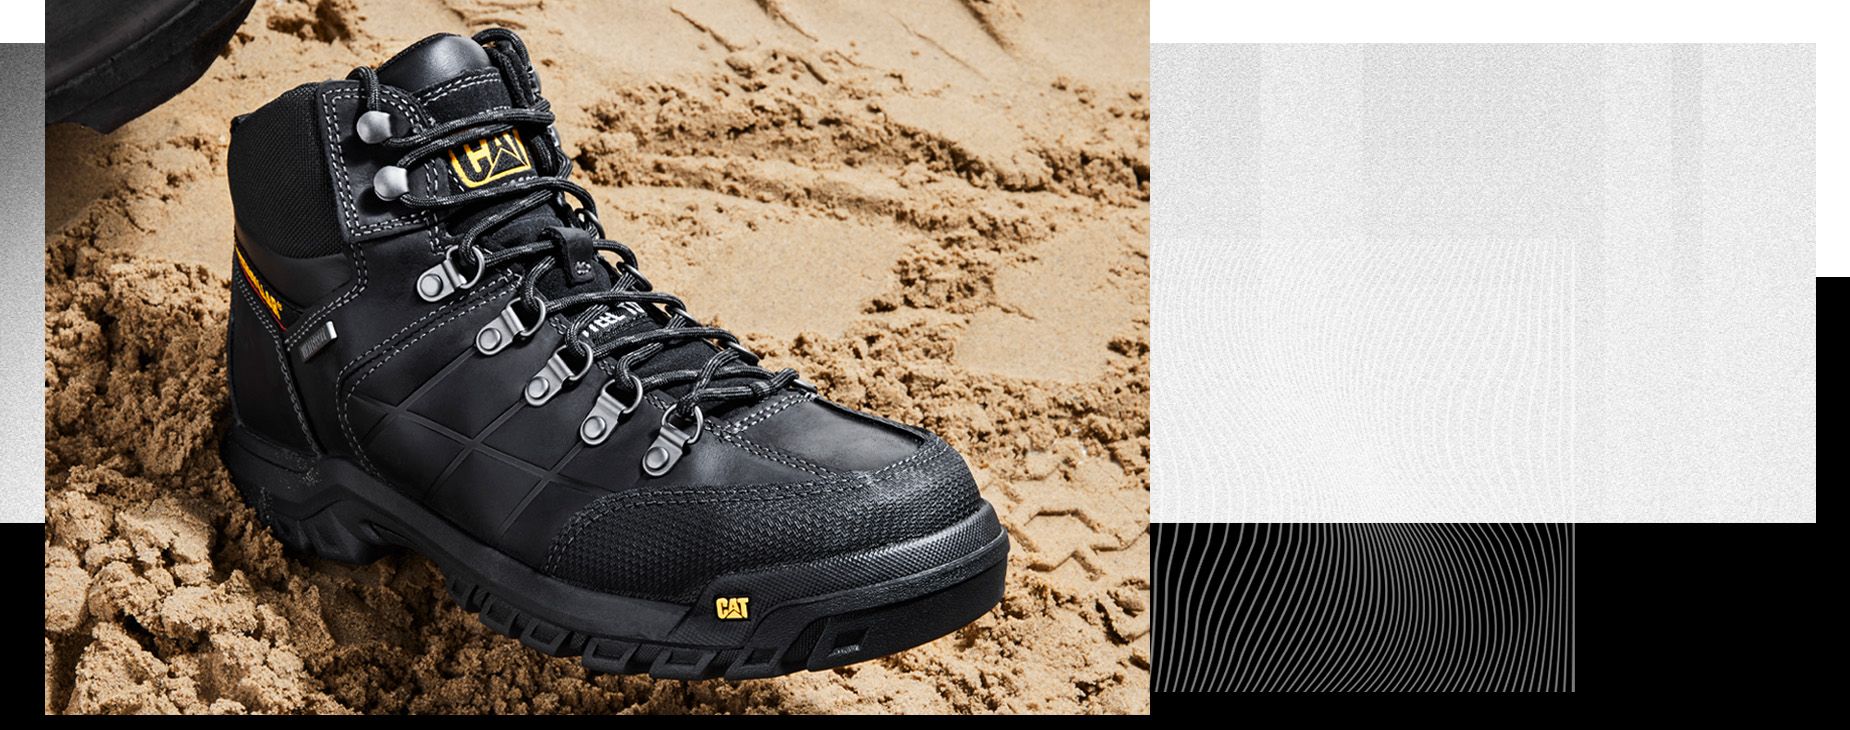 CAT Footwear black Men's Threshold waterproof work boot on sand.